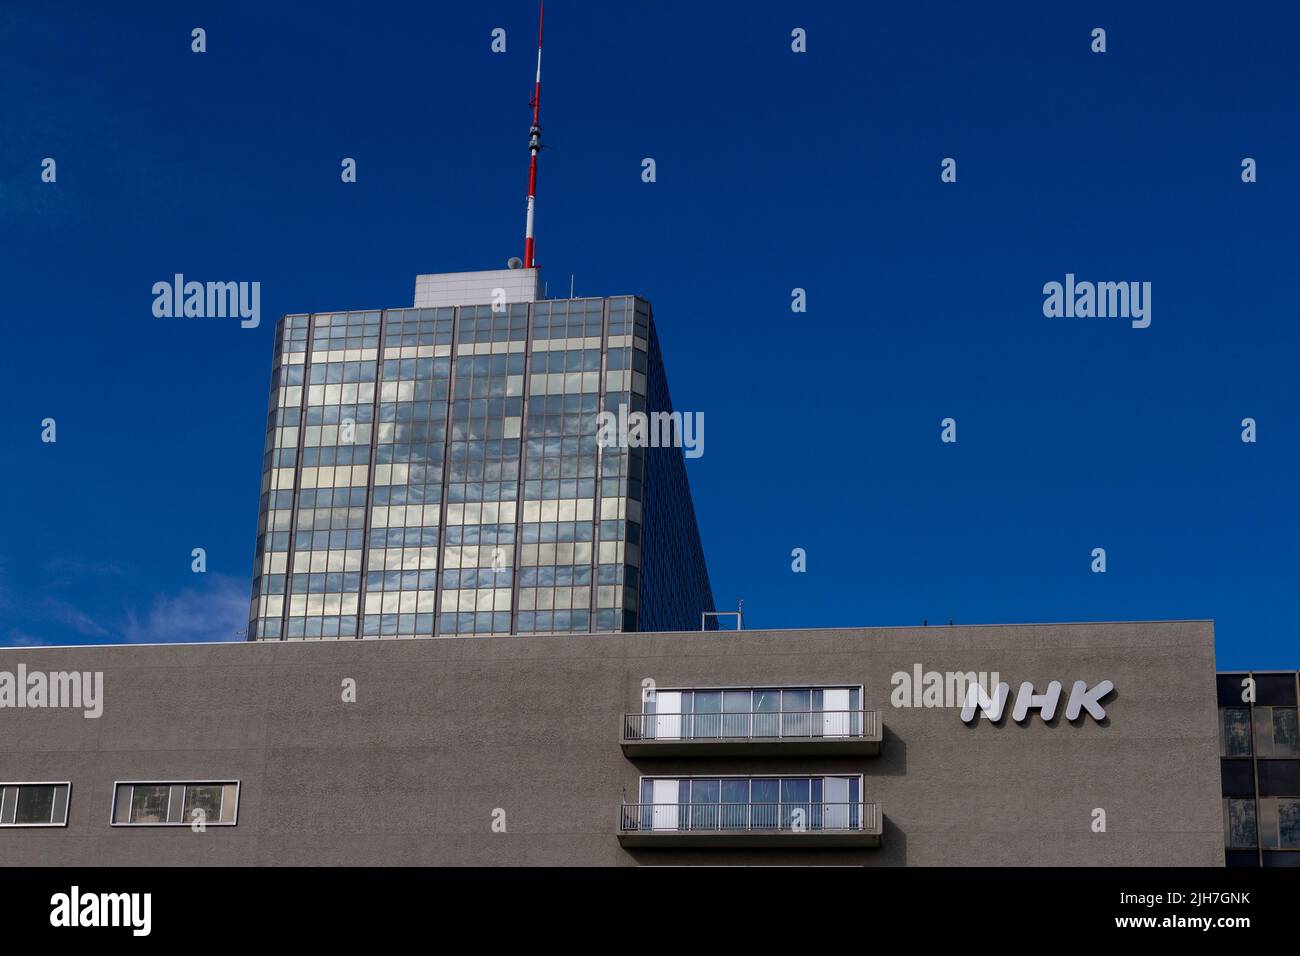 NHK (Japan's national broadcaster) broadcasting building in Shibuya, Tokyo, Japan. Stock Photo